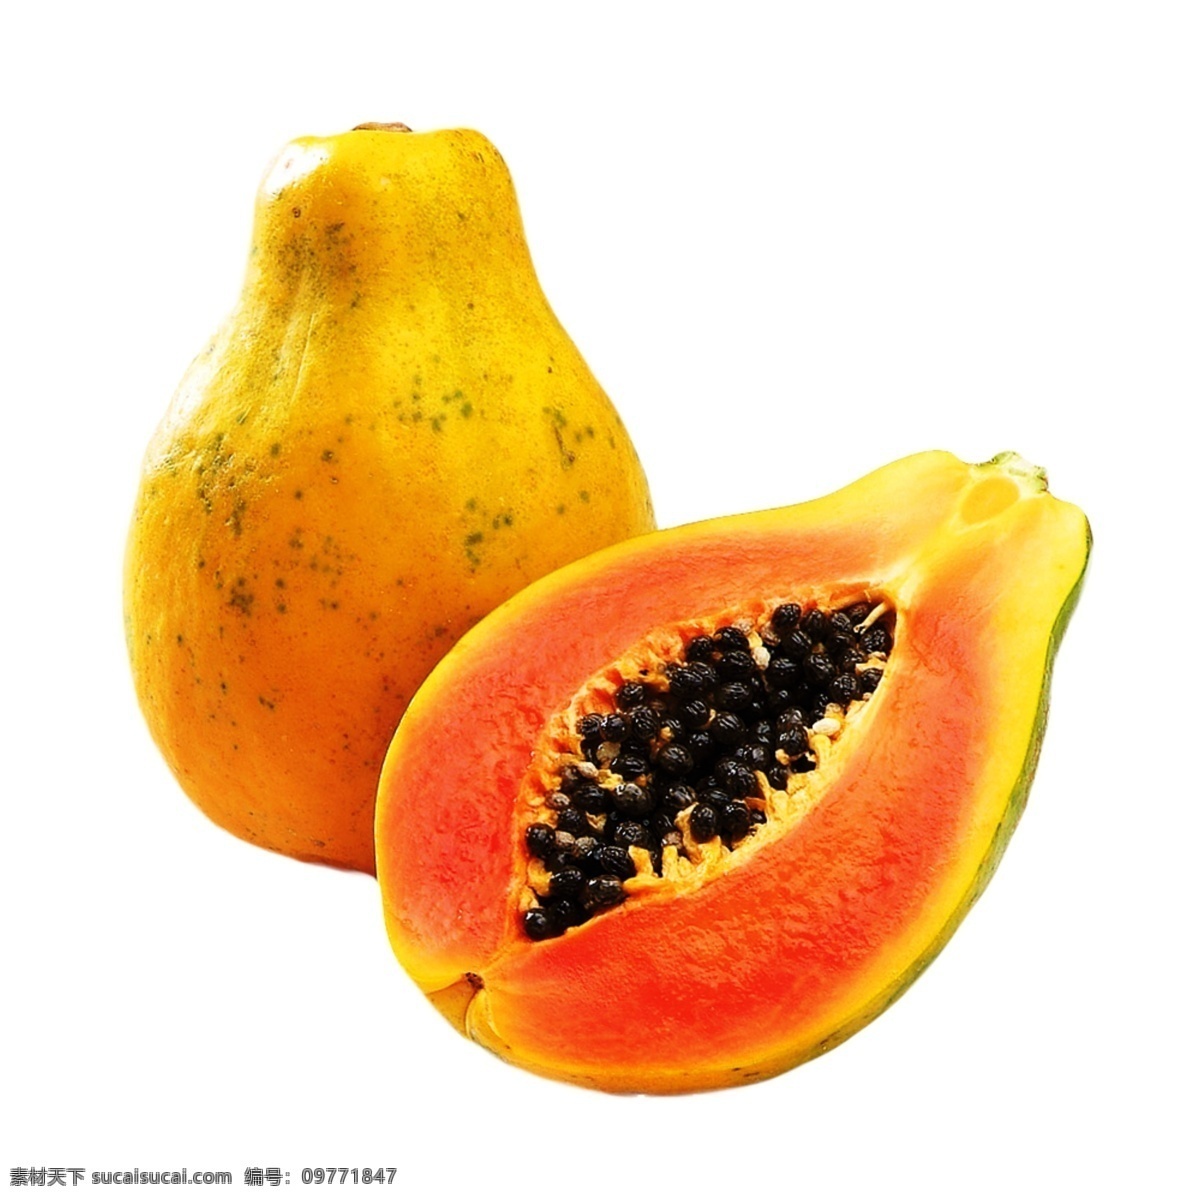 切开 橙色 木瓜 免 抠 透明 图形 木瓜元素 木瓜海报图片 木瓜广告素材 木瓜海报图